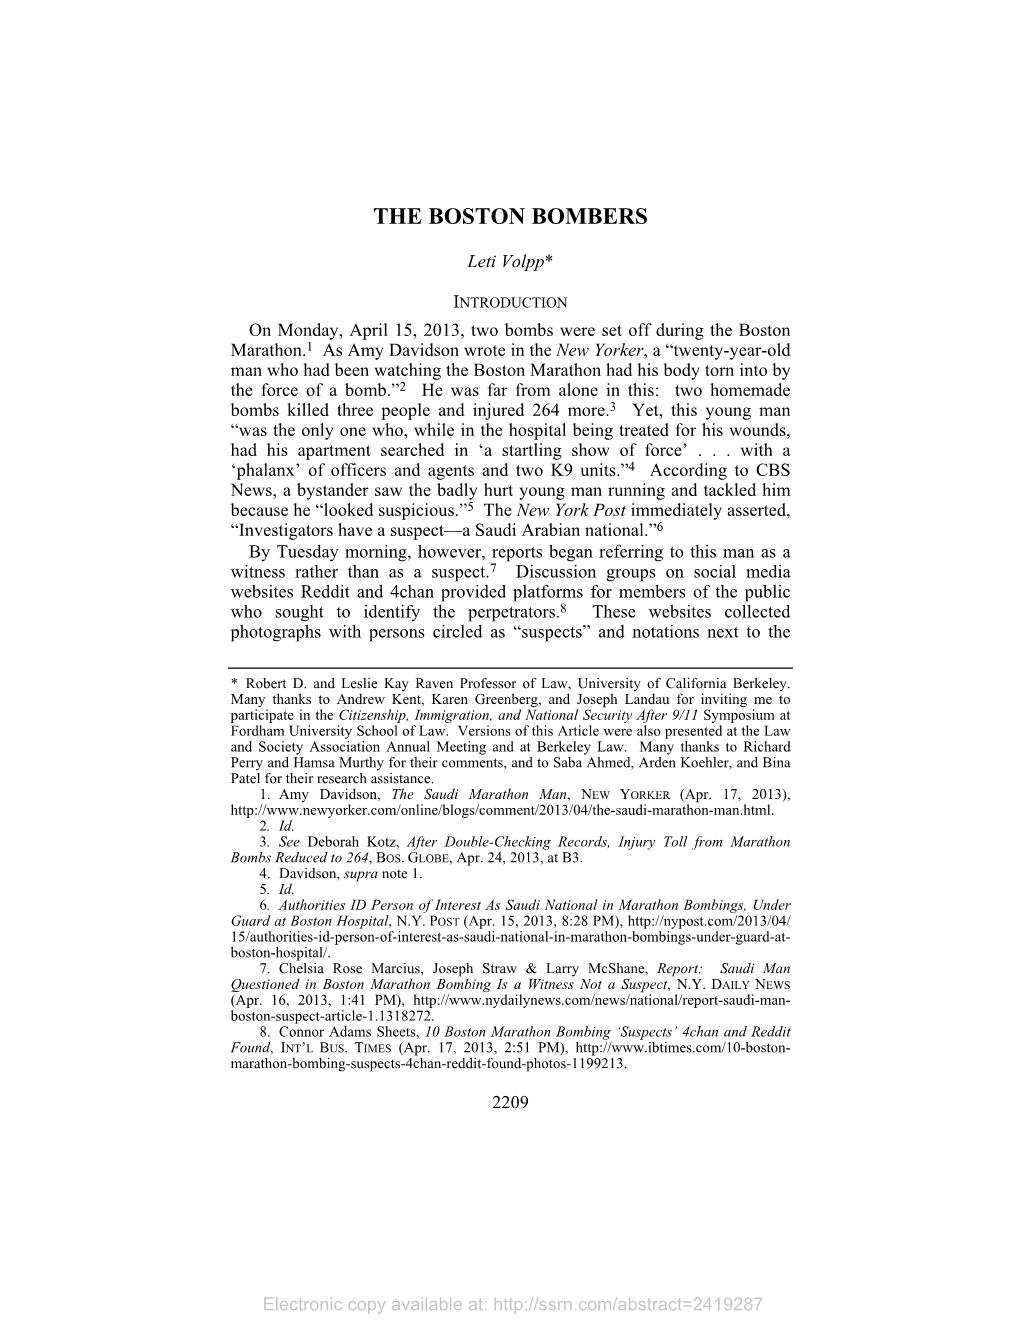 The Boston Bombers